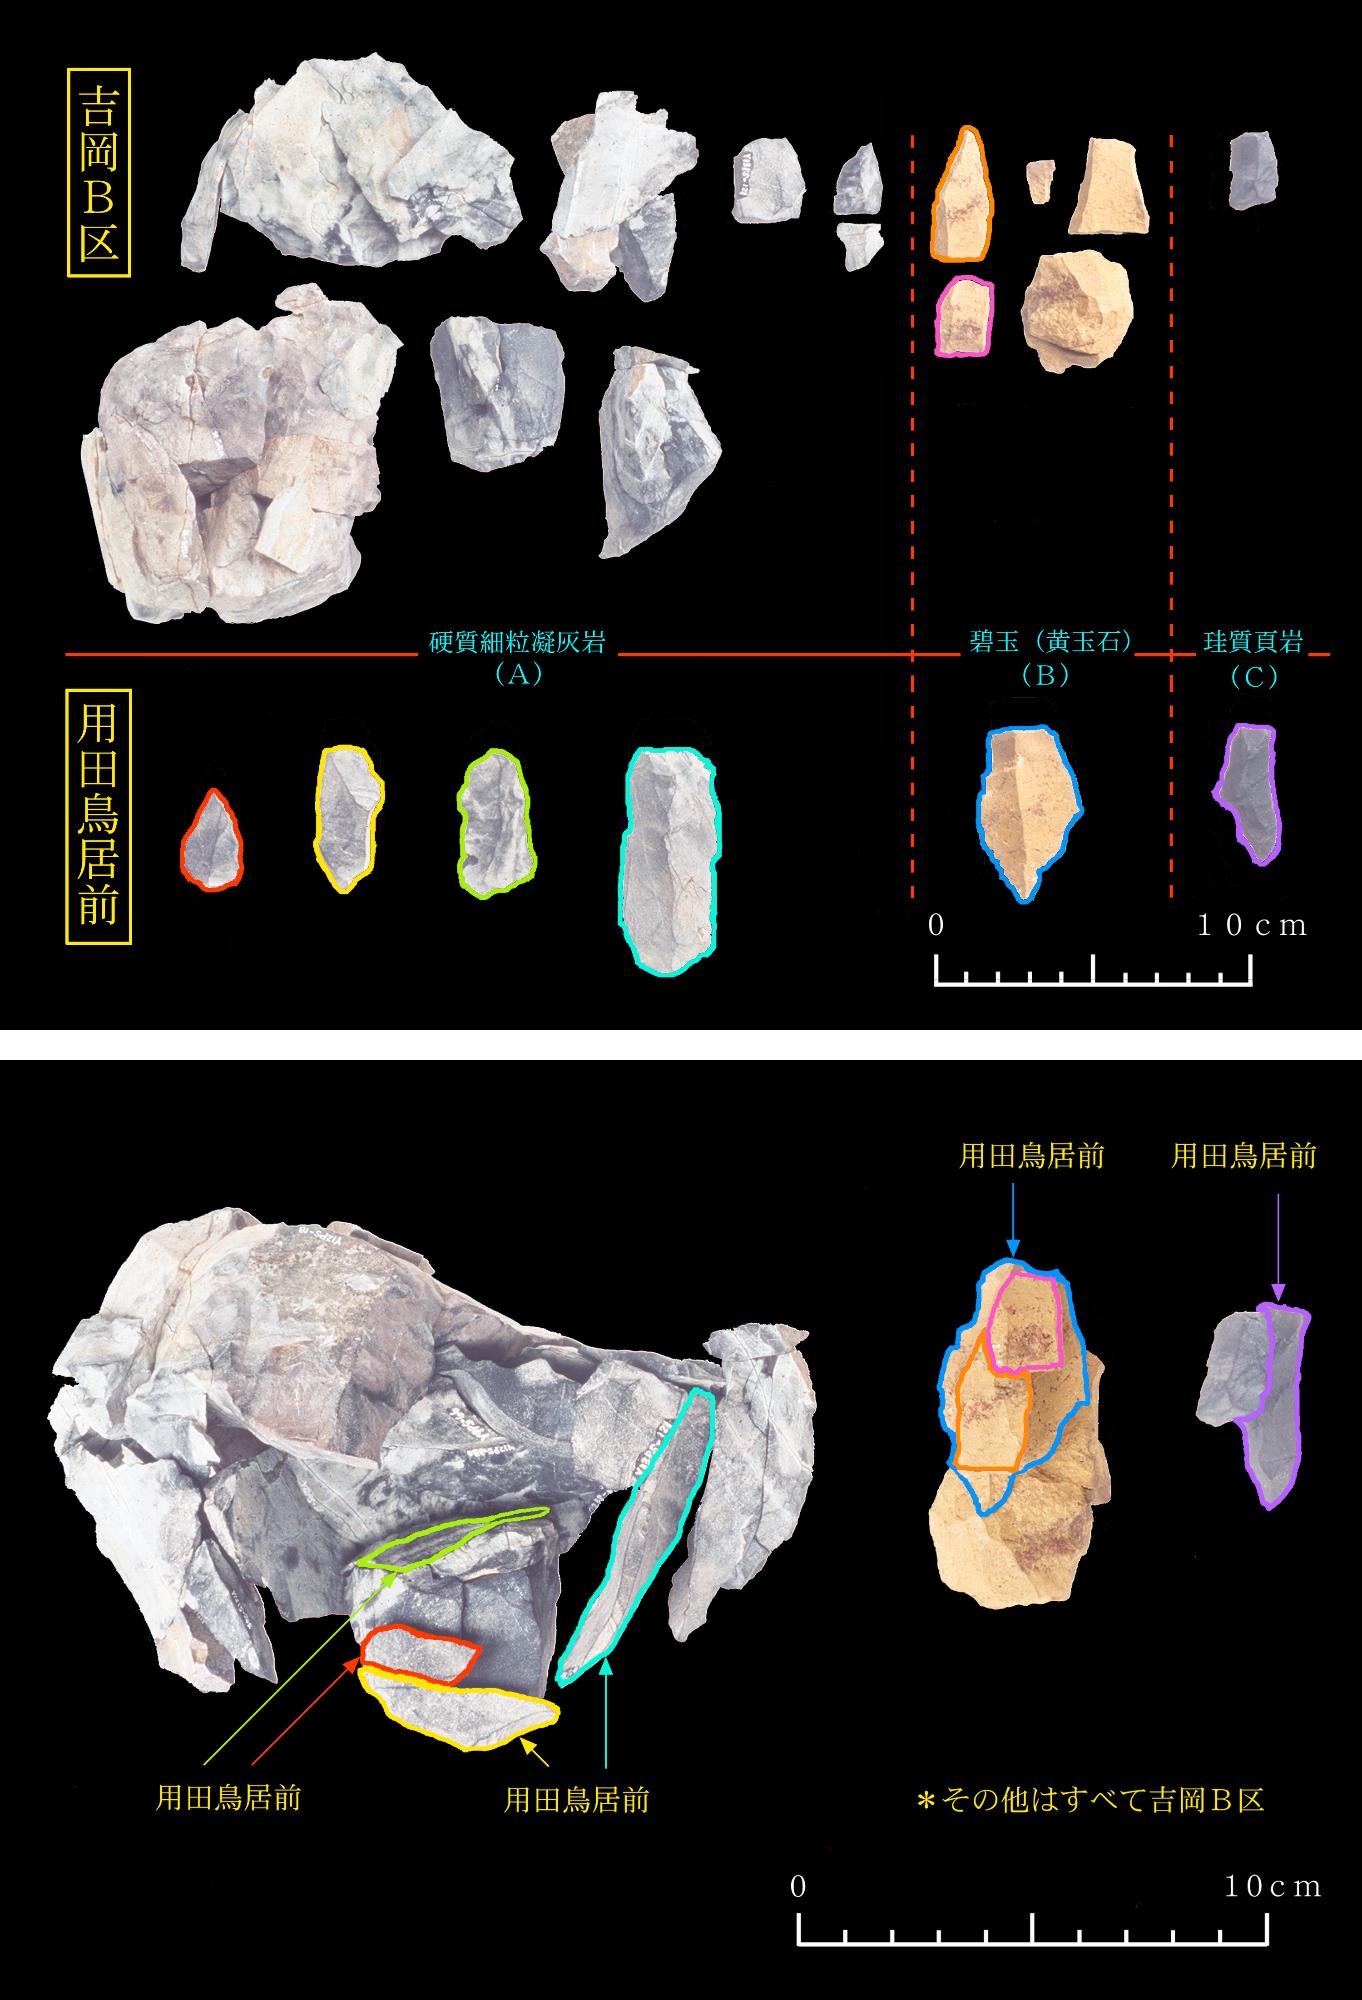 下側：3つの石器、上側：3つの石器から発掘された3種類の石の写真